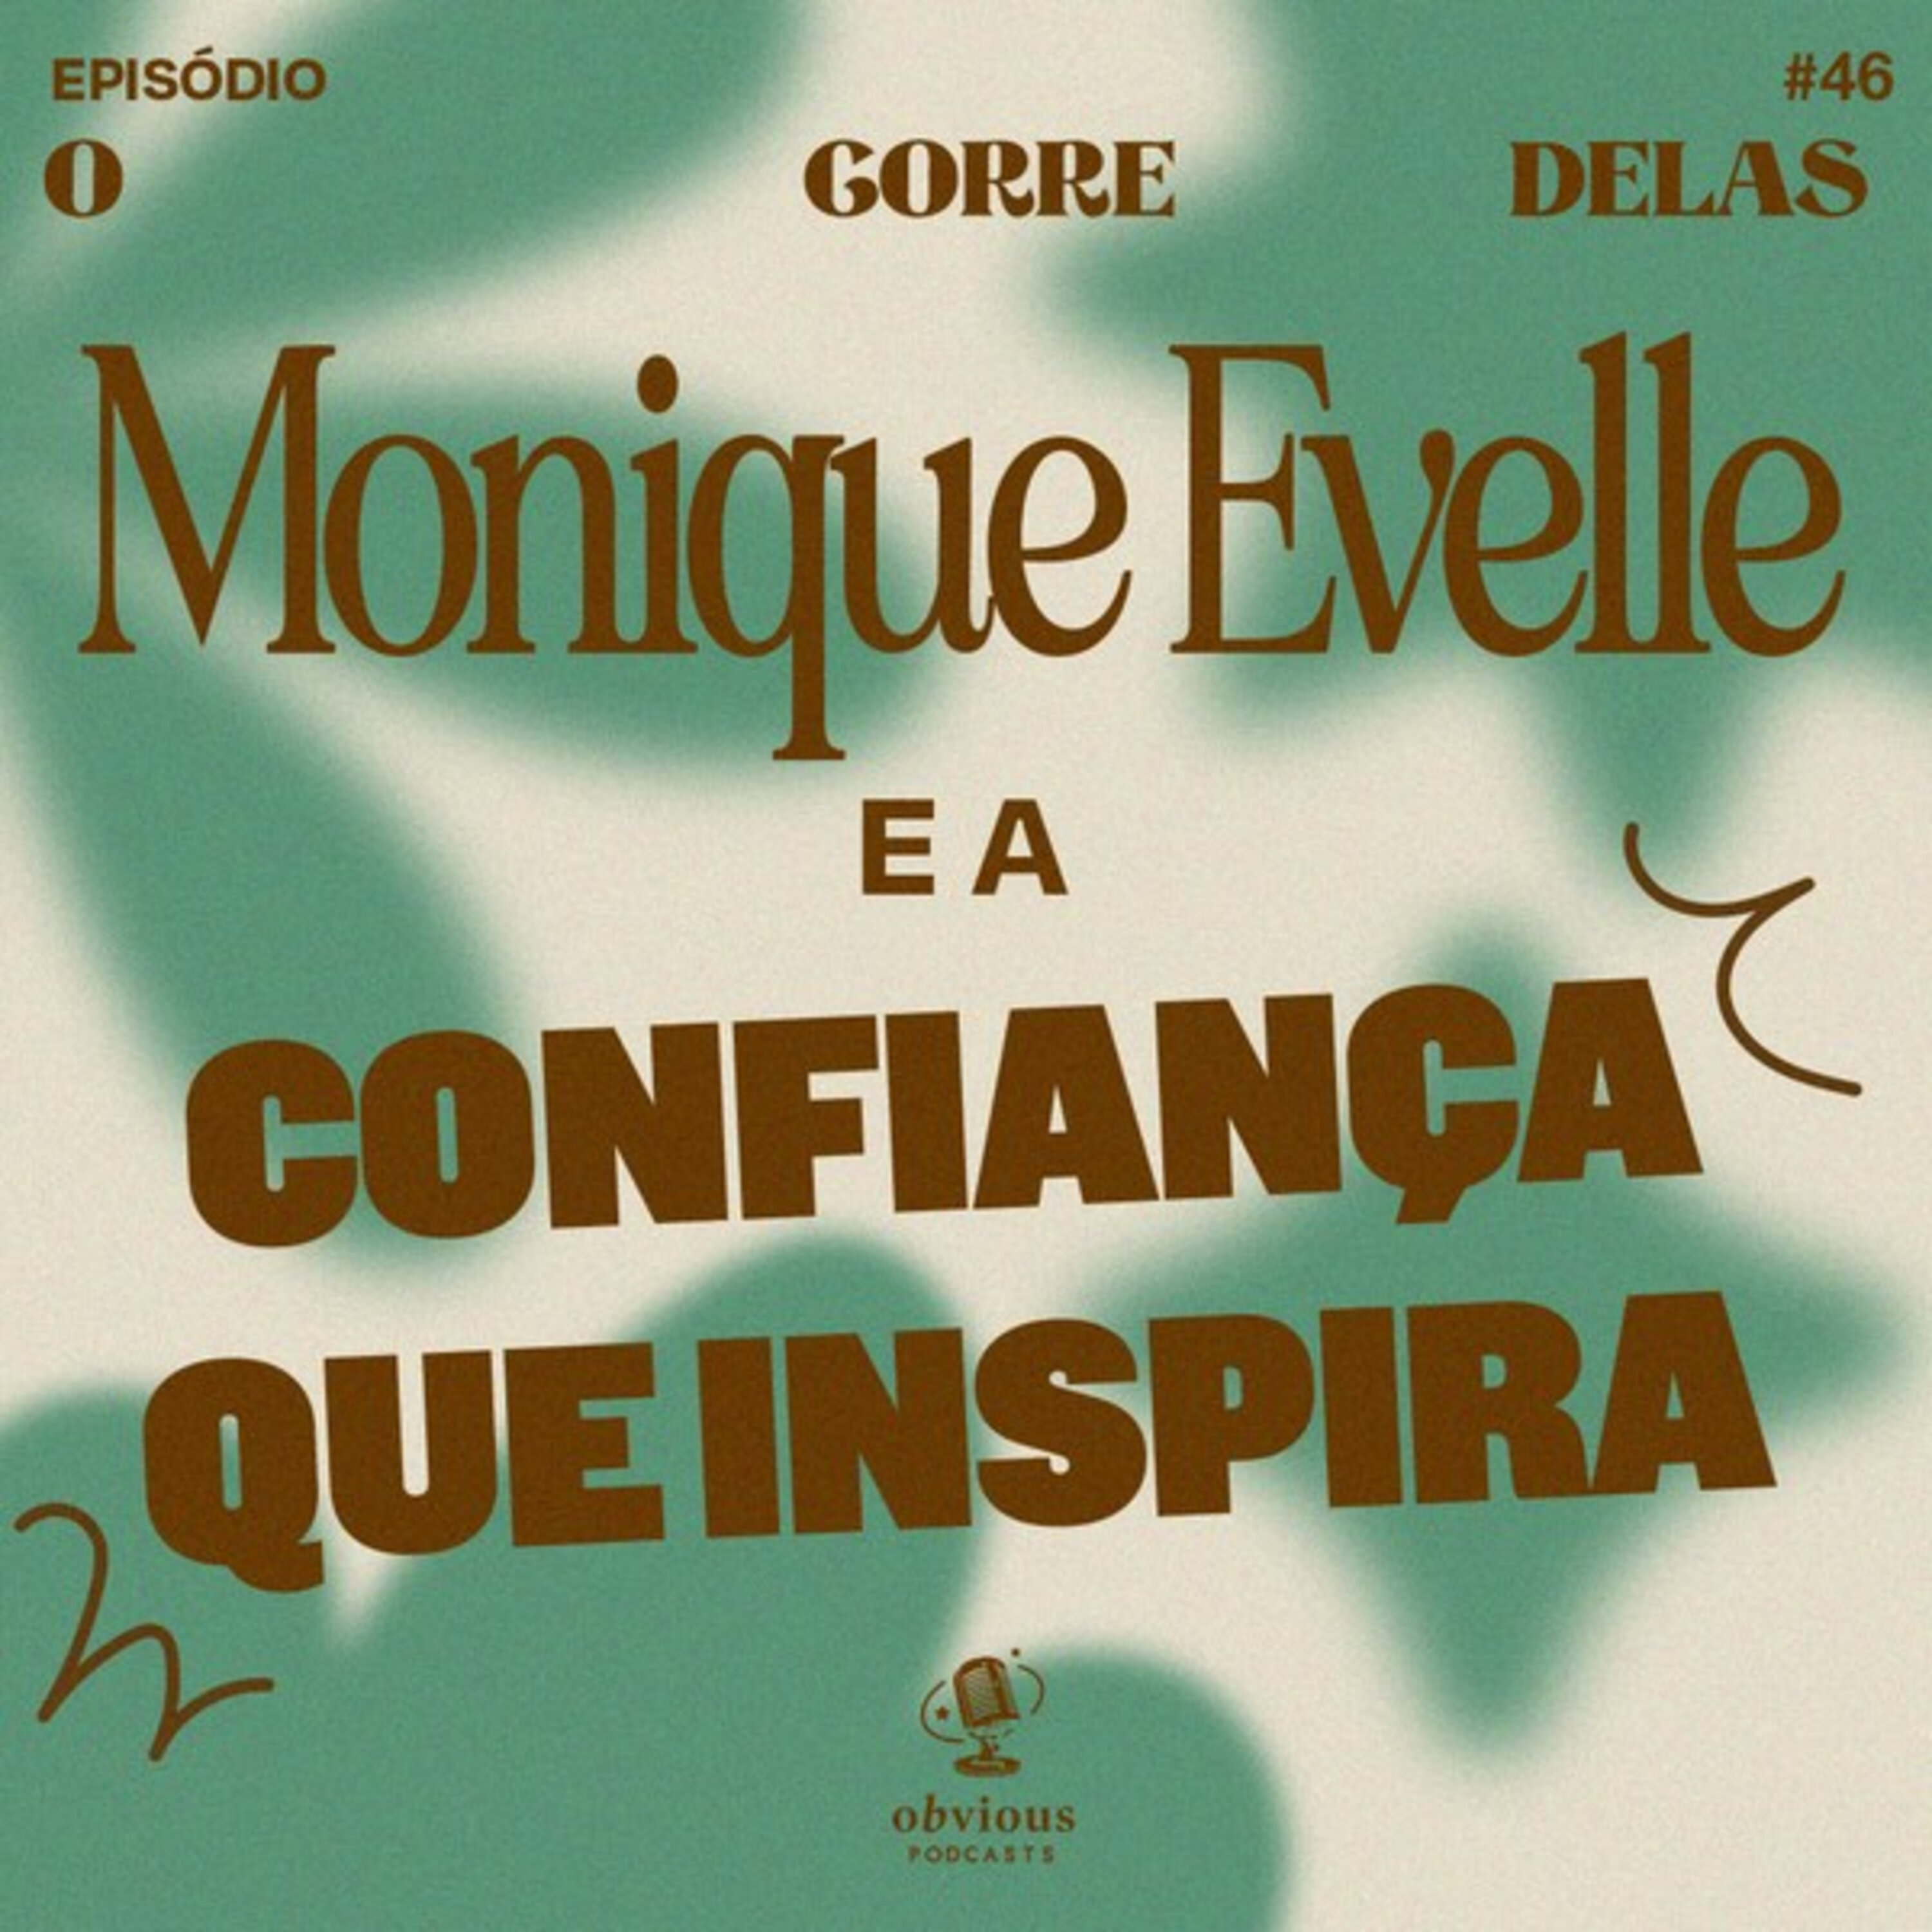 #46 - Monique Evelle e a confiança que inspira